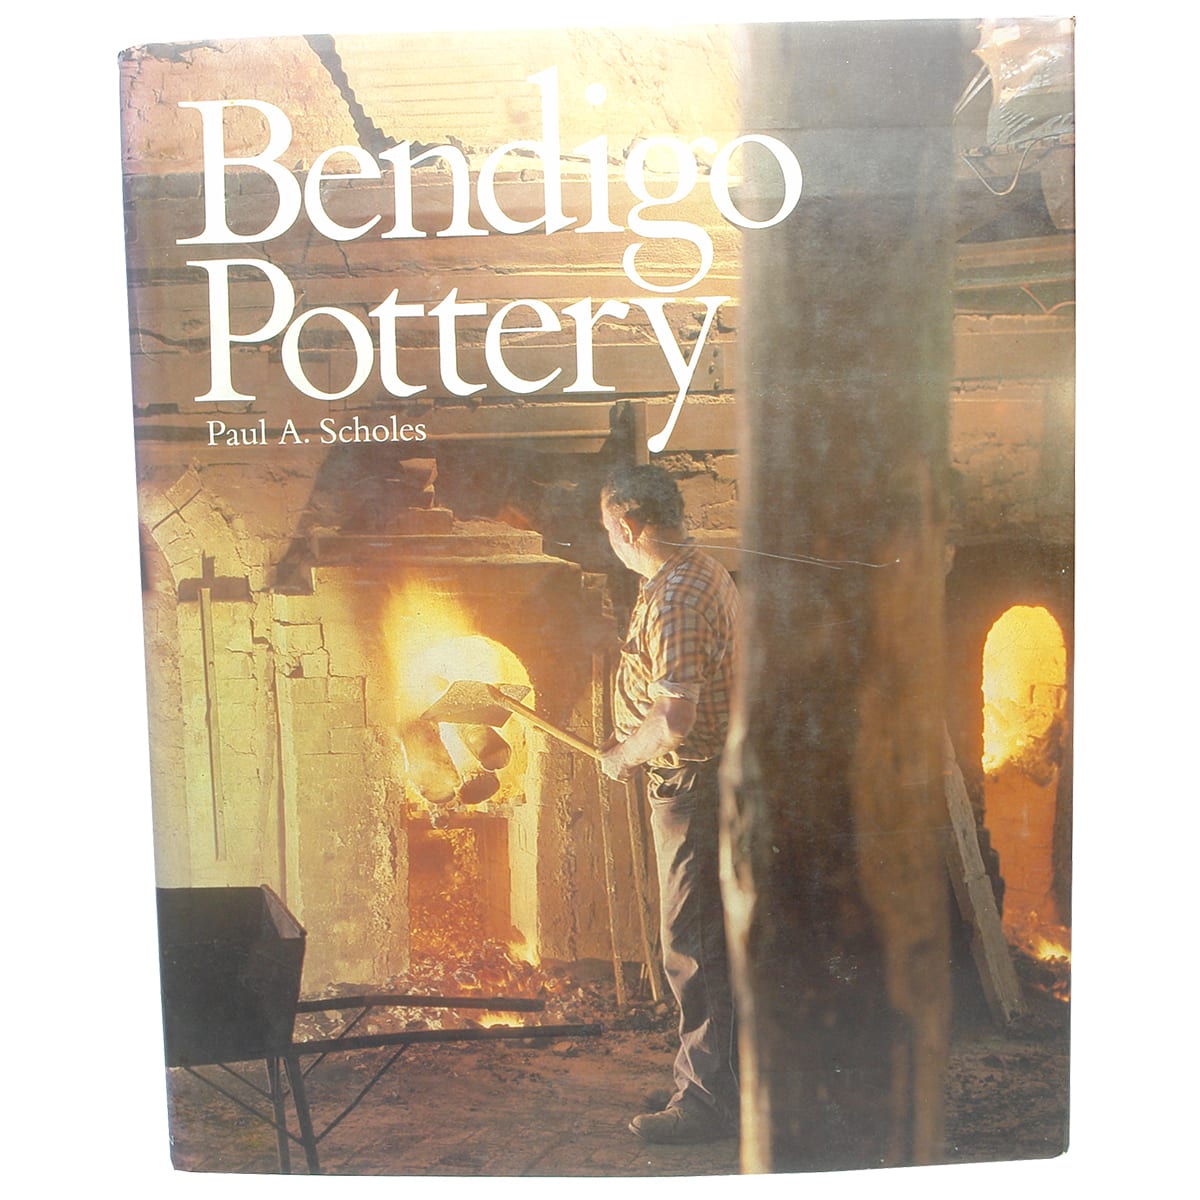 Book. Bendigo Pottery, Paul A. Scholes, 1979.